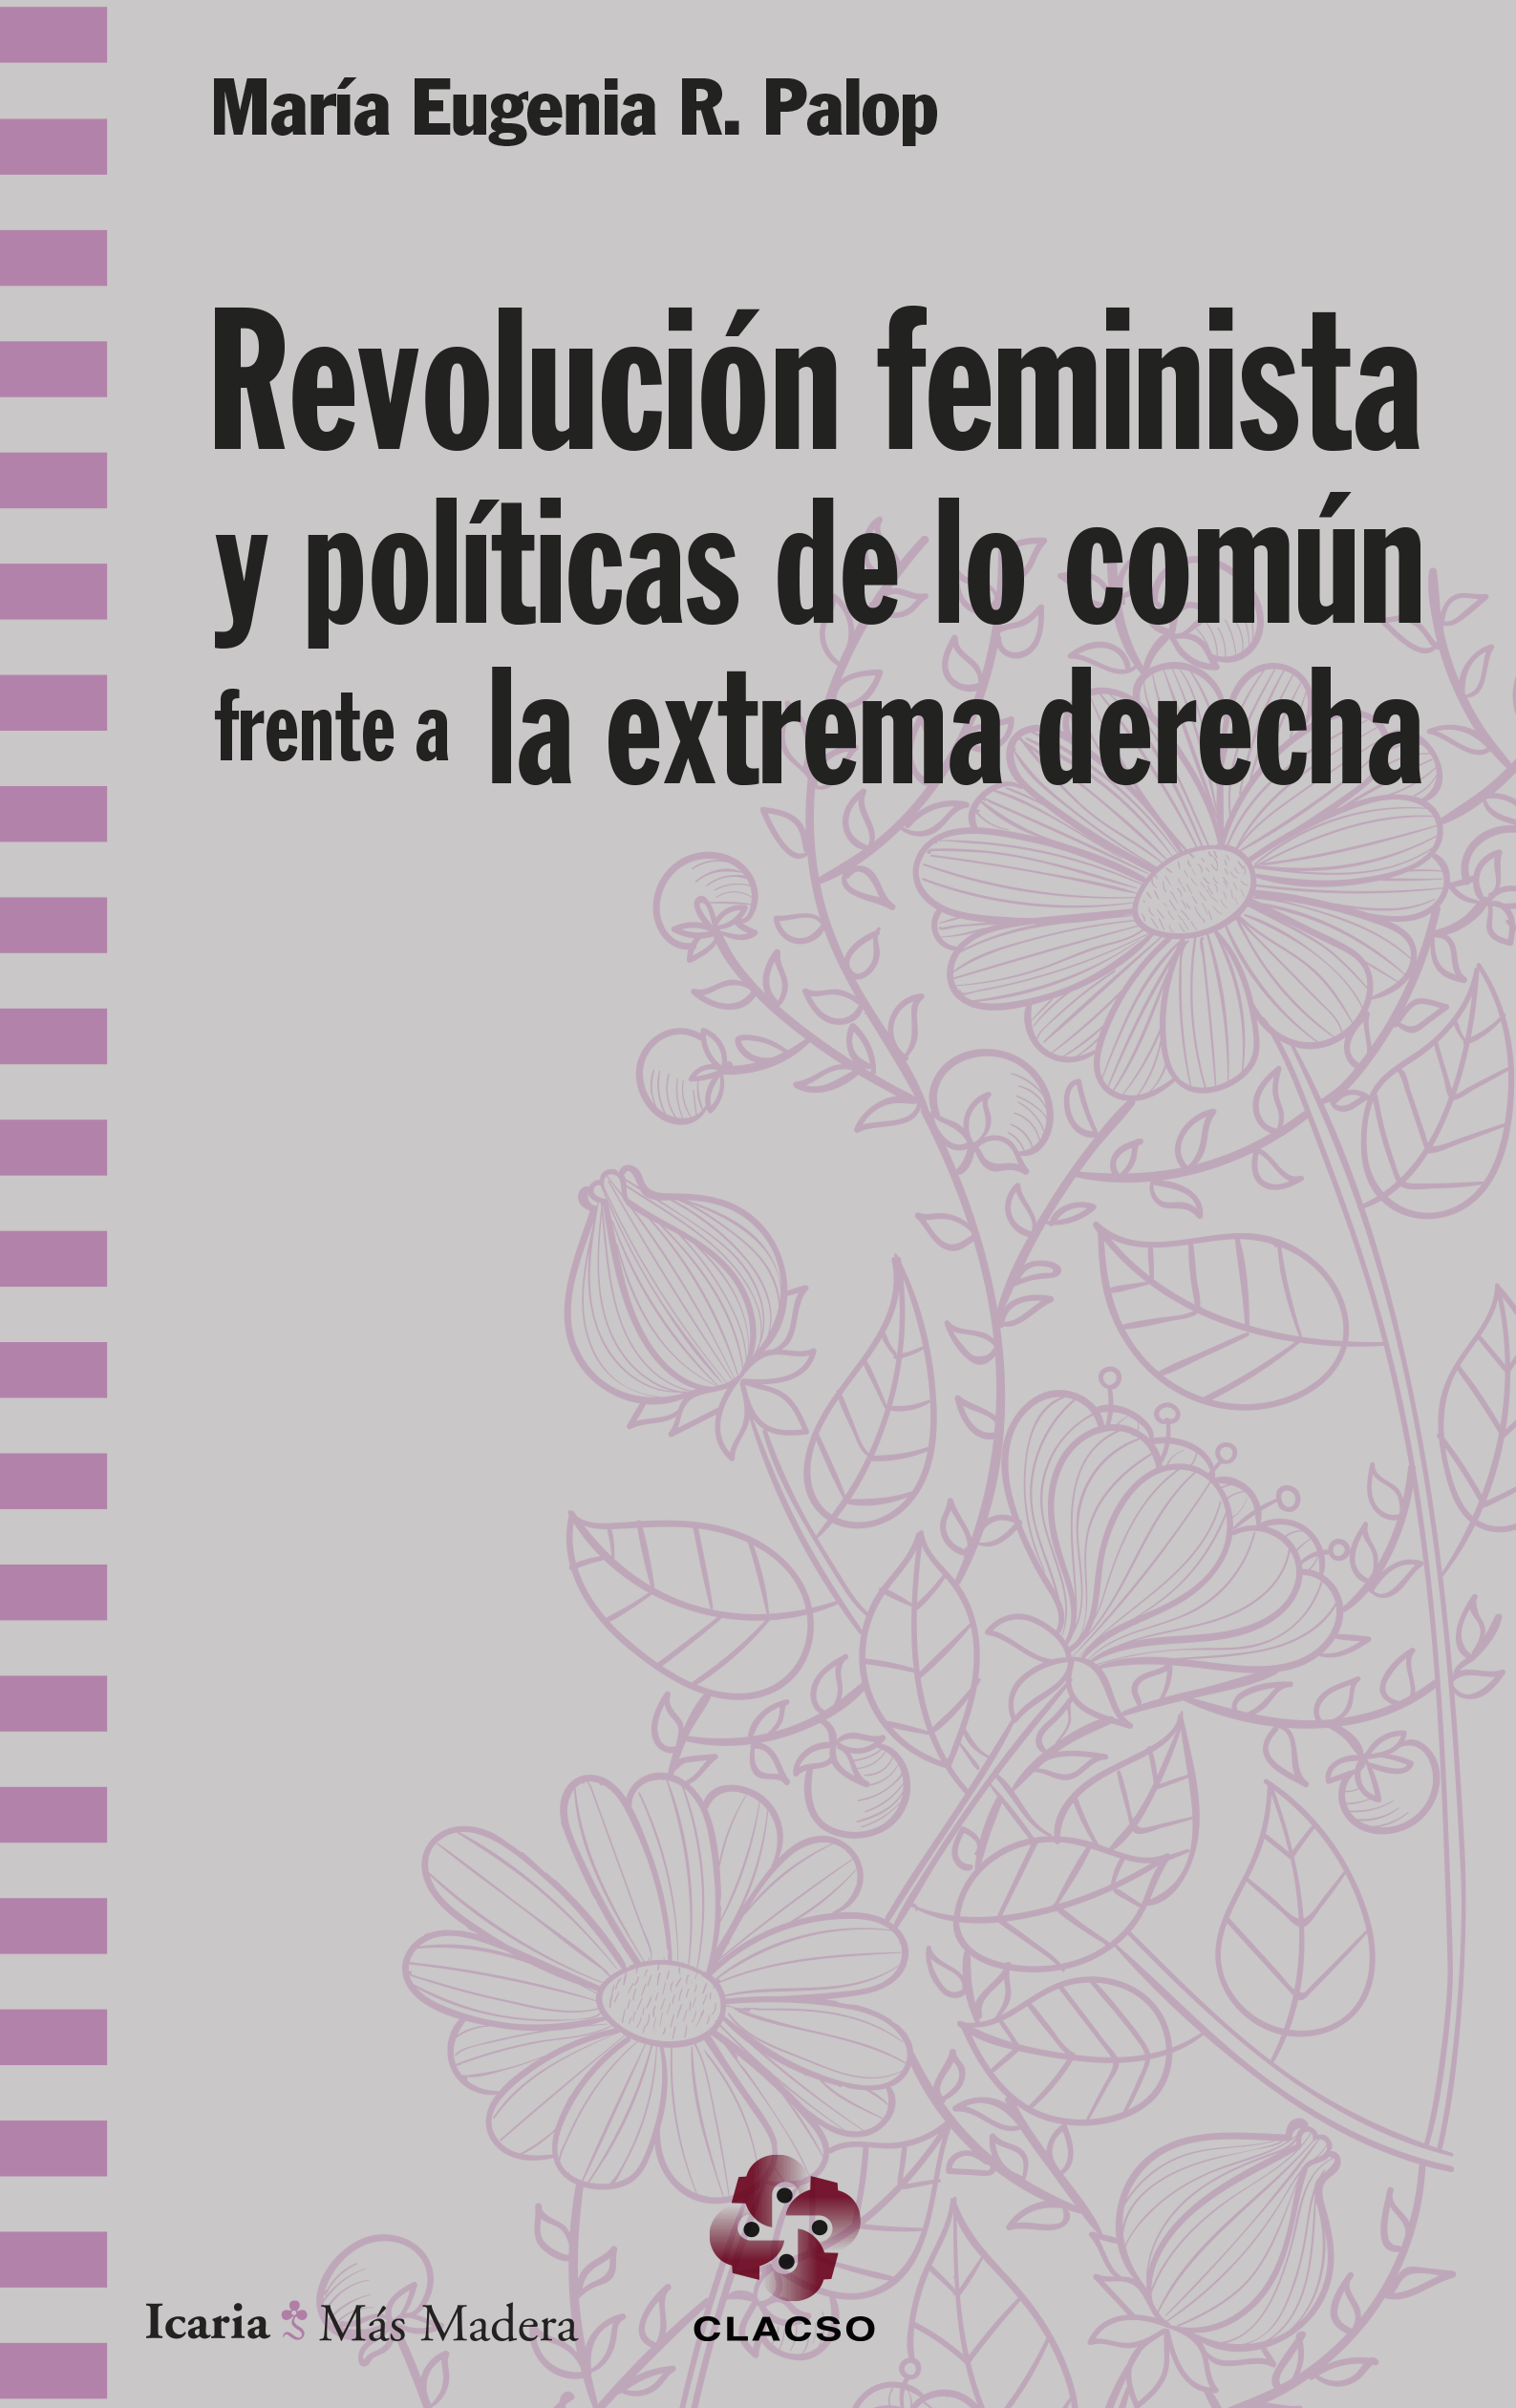 Mª Eugenia R. Palop: Revolución feminista y políticas de lo común frente a la extrema derecha